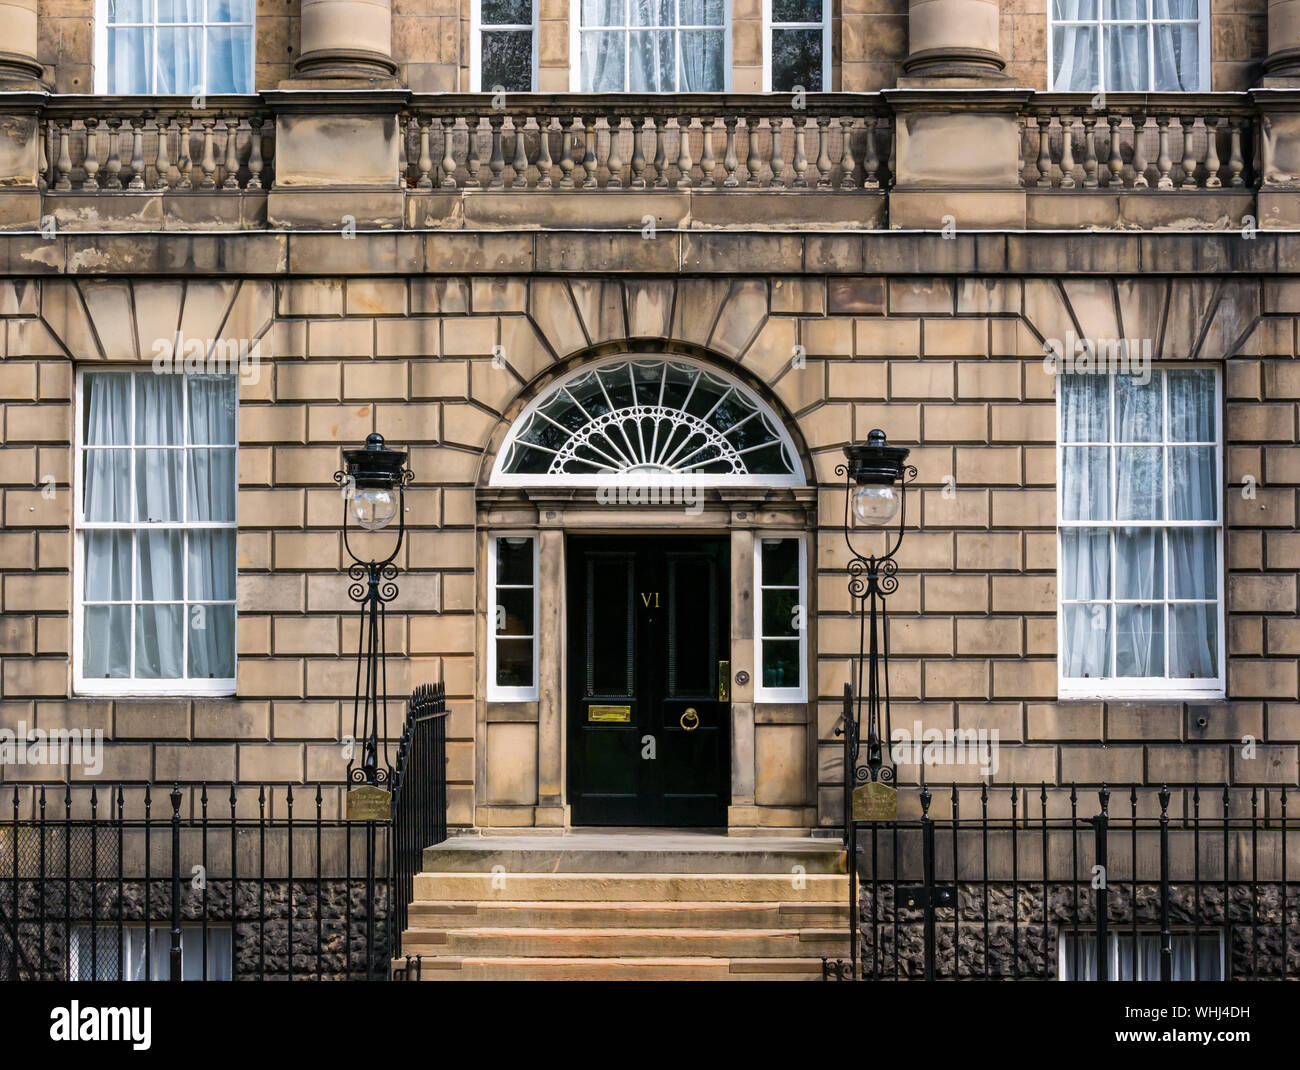 Erster Minister's Residence, georgische Bute Haus Eingang von Robert Adam, Charlotte Square, Edinburgh, Schottland, Großbritannien Stockfoto